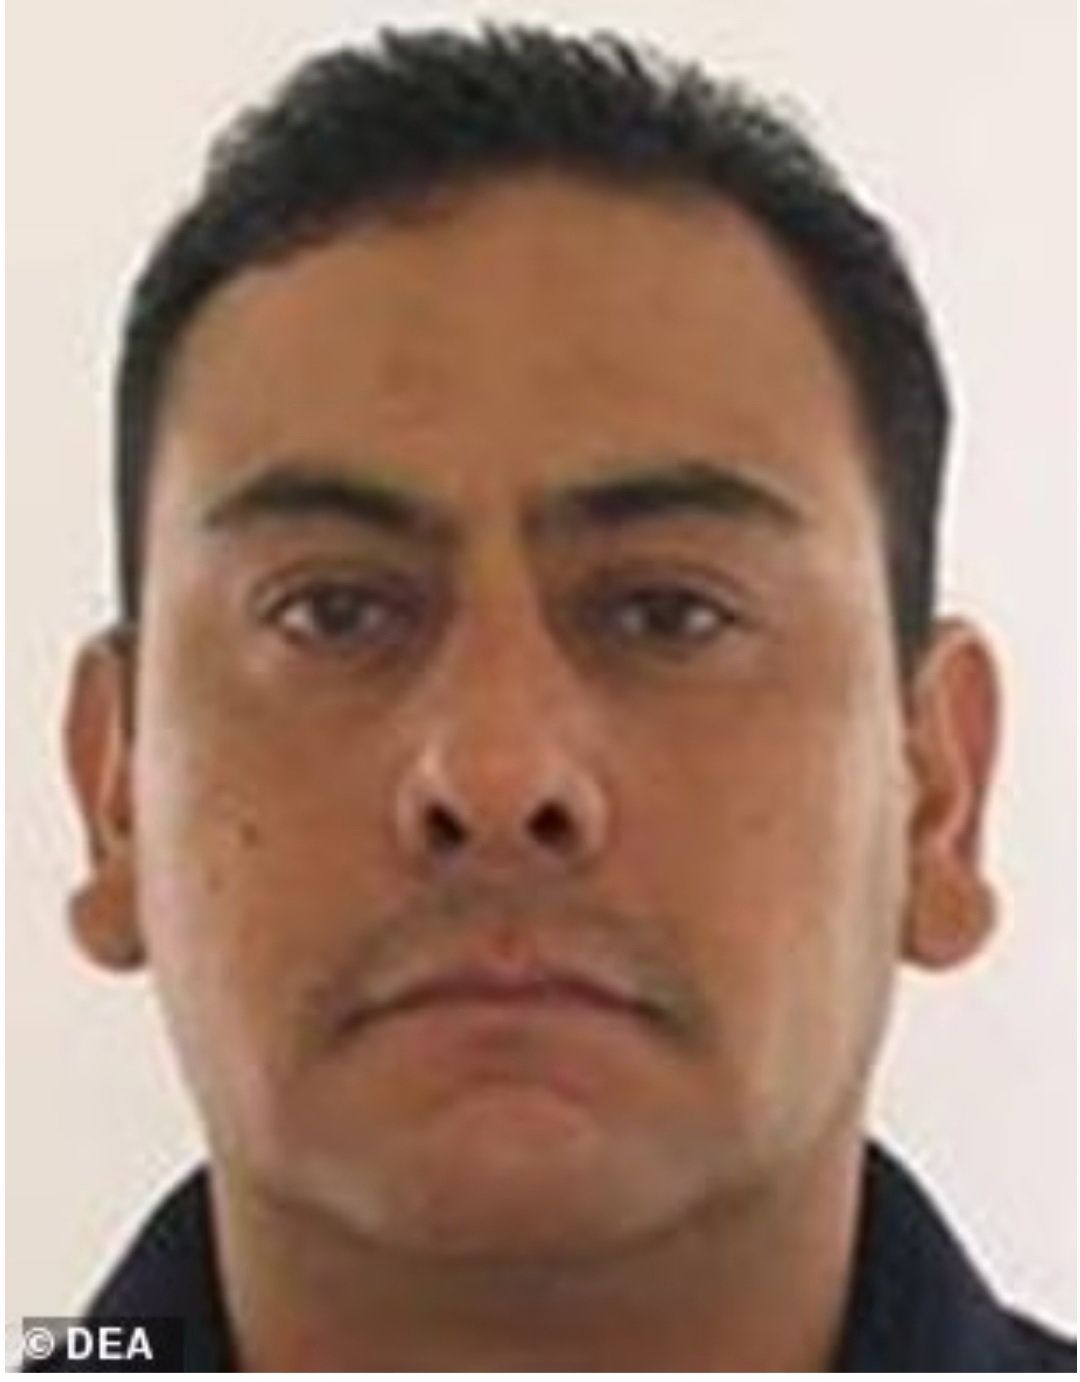 Arturo Shows Urquidi, mantan perwira polisi di Meksiko, dijatuhi hukuman penjara seumur hidup pada 3 Maret karena perannya dalam membantu upaya perdagangan narkoba Kartel Sinaloa.  